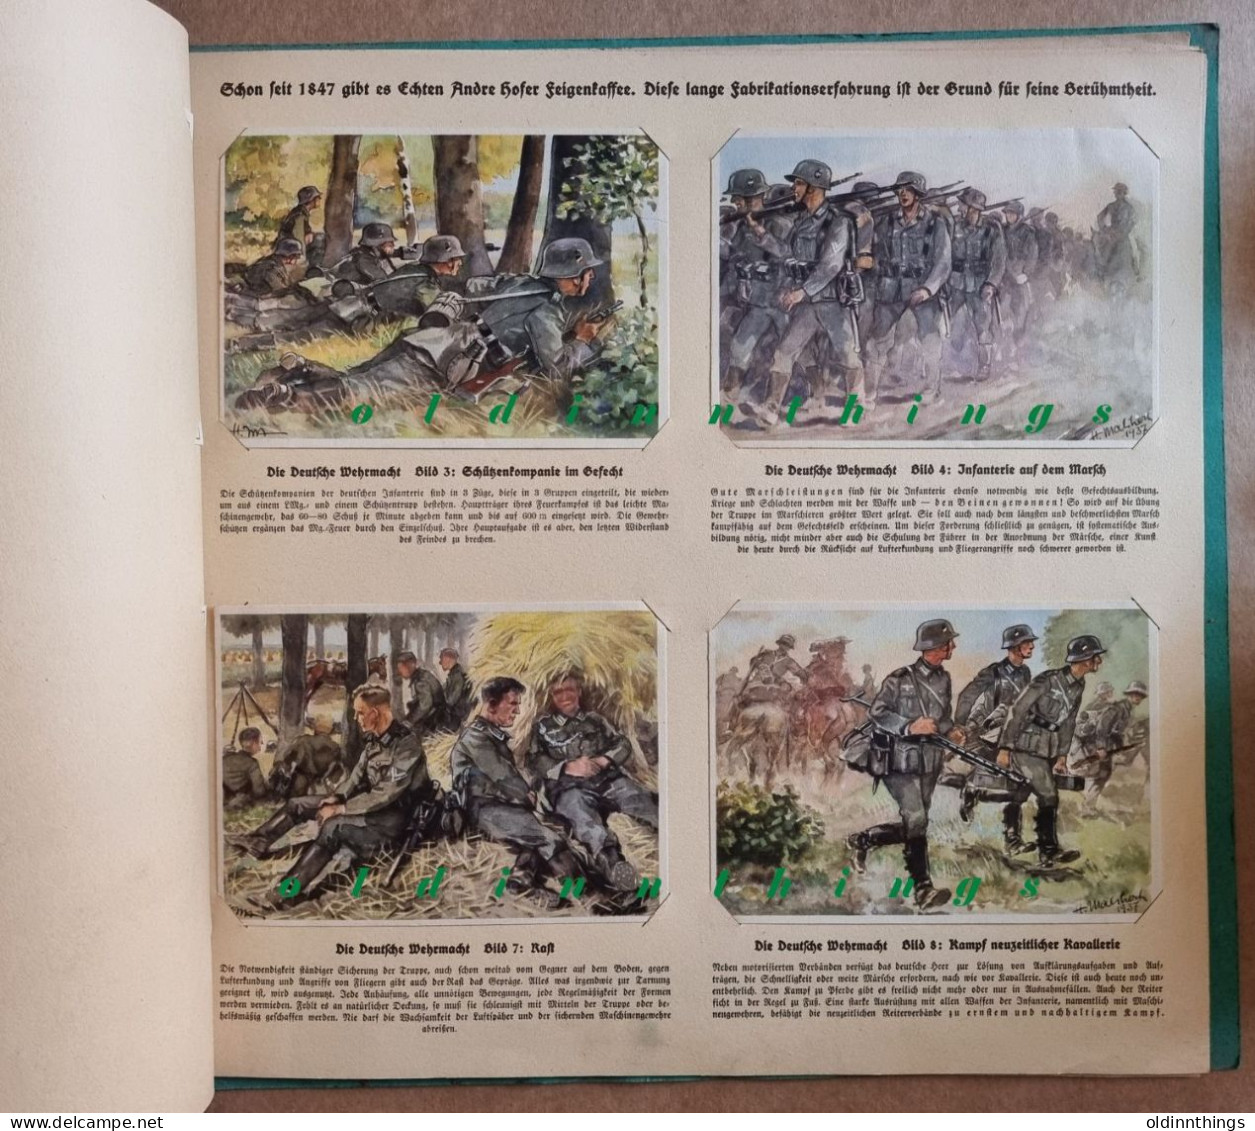 Andre Hofer Die deutsche Wehrmacht Sammel-Bilderalbum Propaganda 2.WK komplett mit 50 Bildern extrem selten